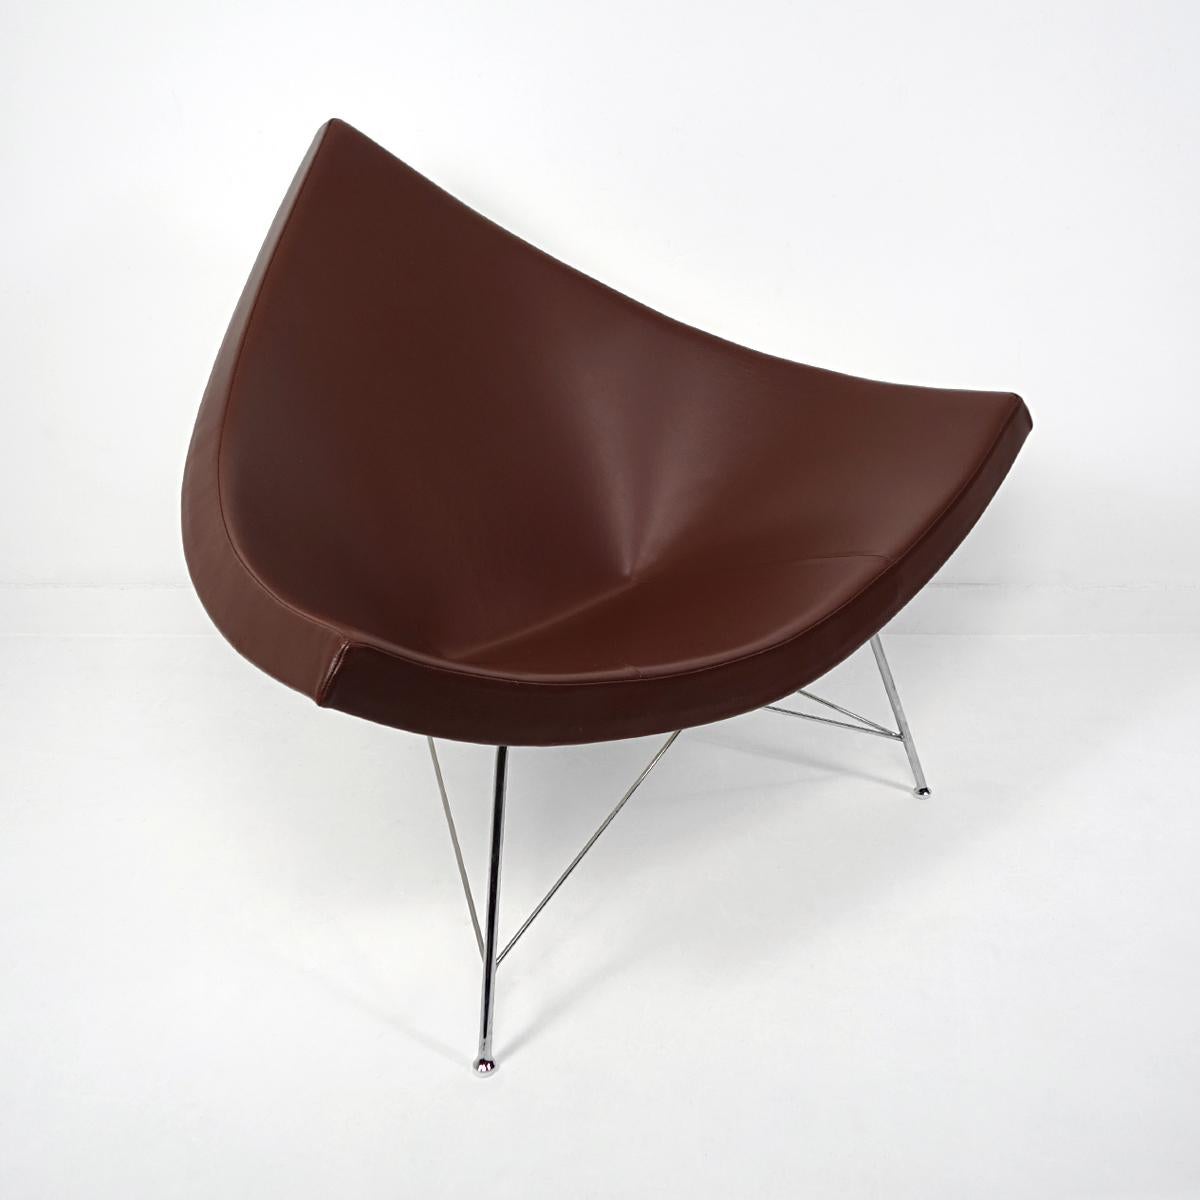 Mid-Century Modern Brown Leather Coconut Chair von George Nelson für Vitra (Stahl) im Angebot